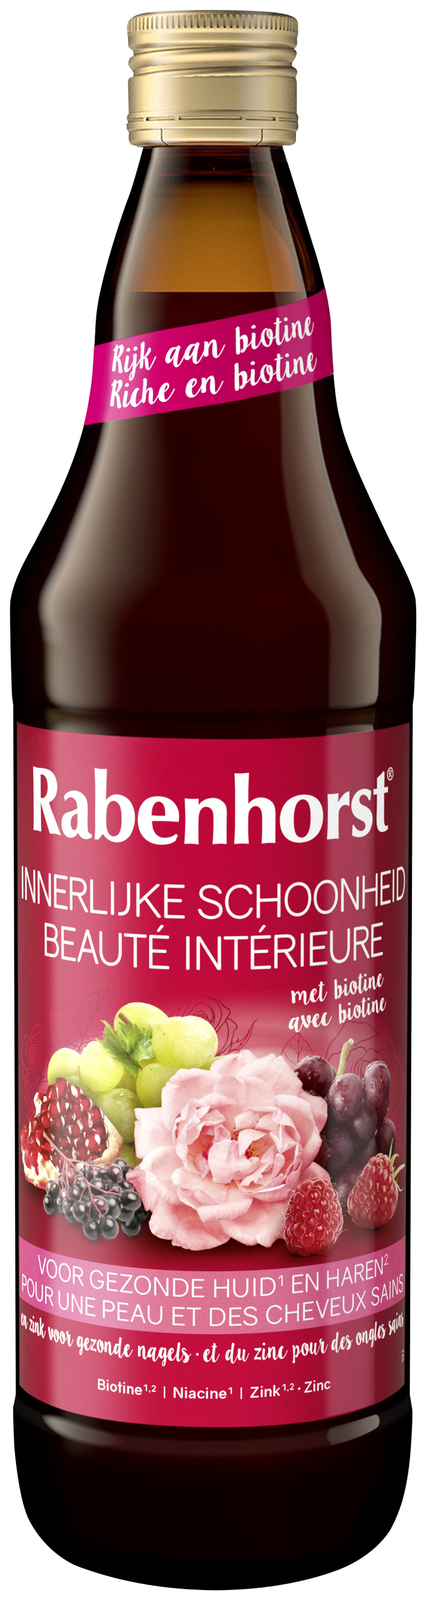 Rabenhorst Innerlijke Schoonheid - met biotine